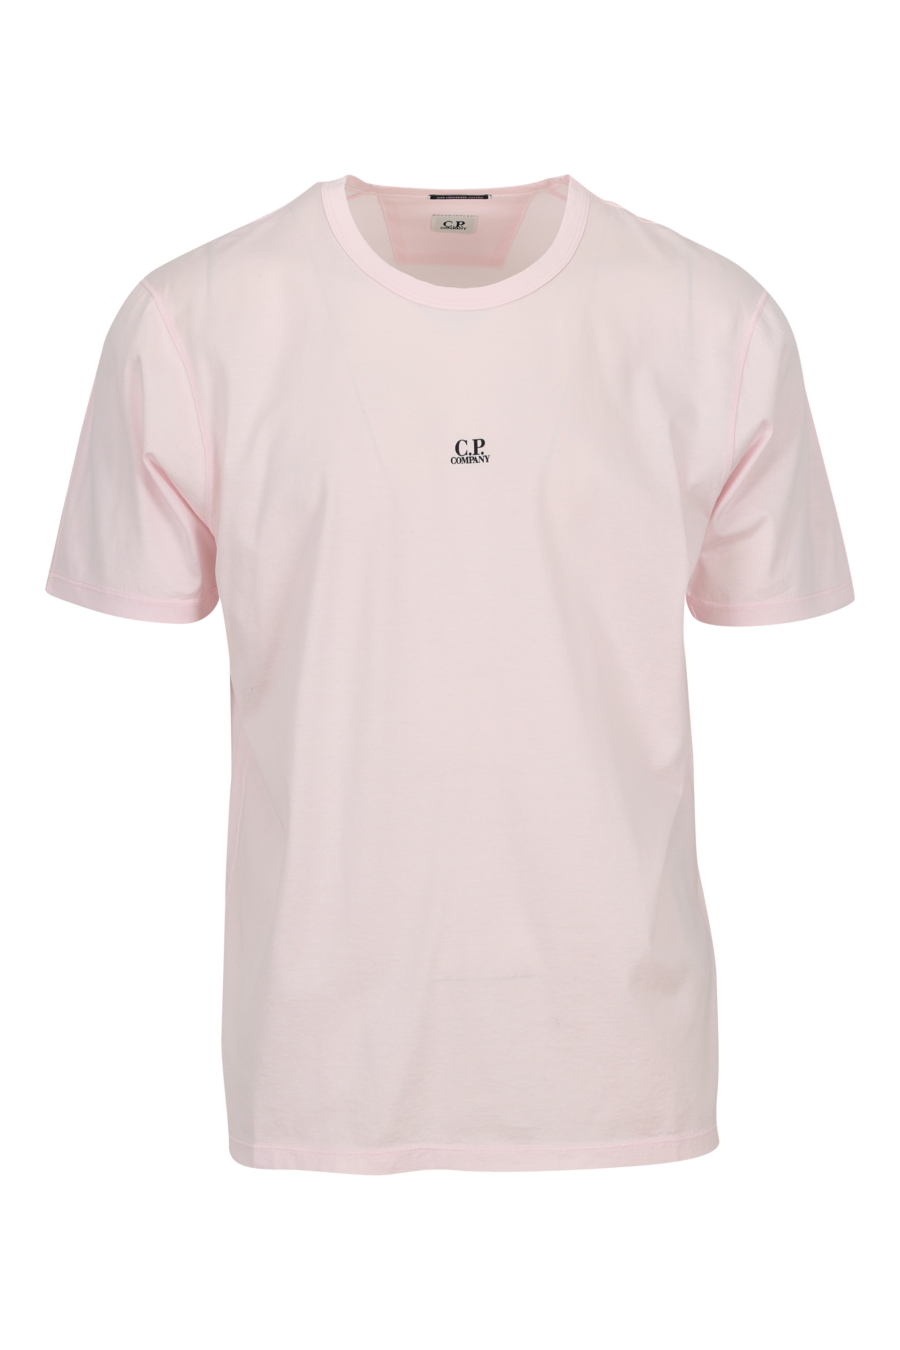 Camiseta rosa con minilogo "cp" centrado - 7620943760354